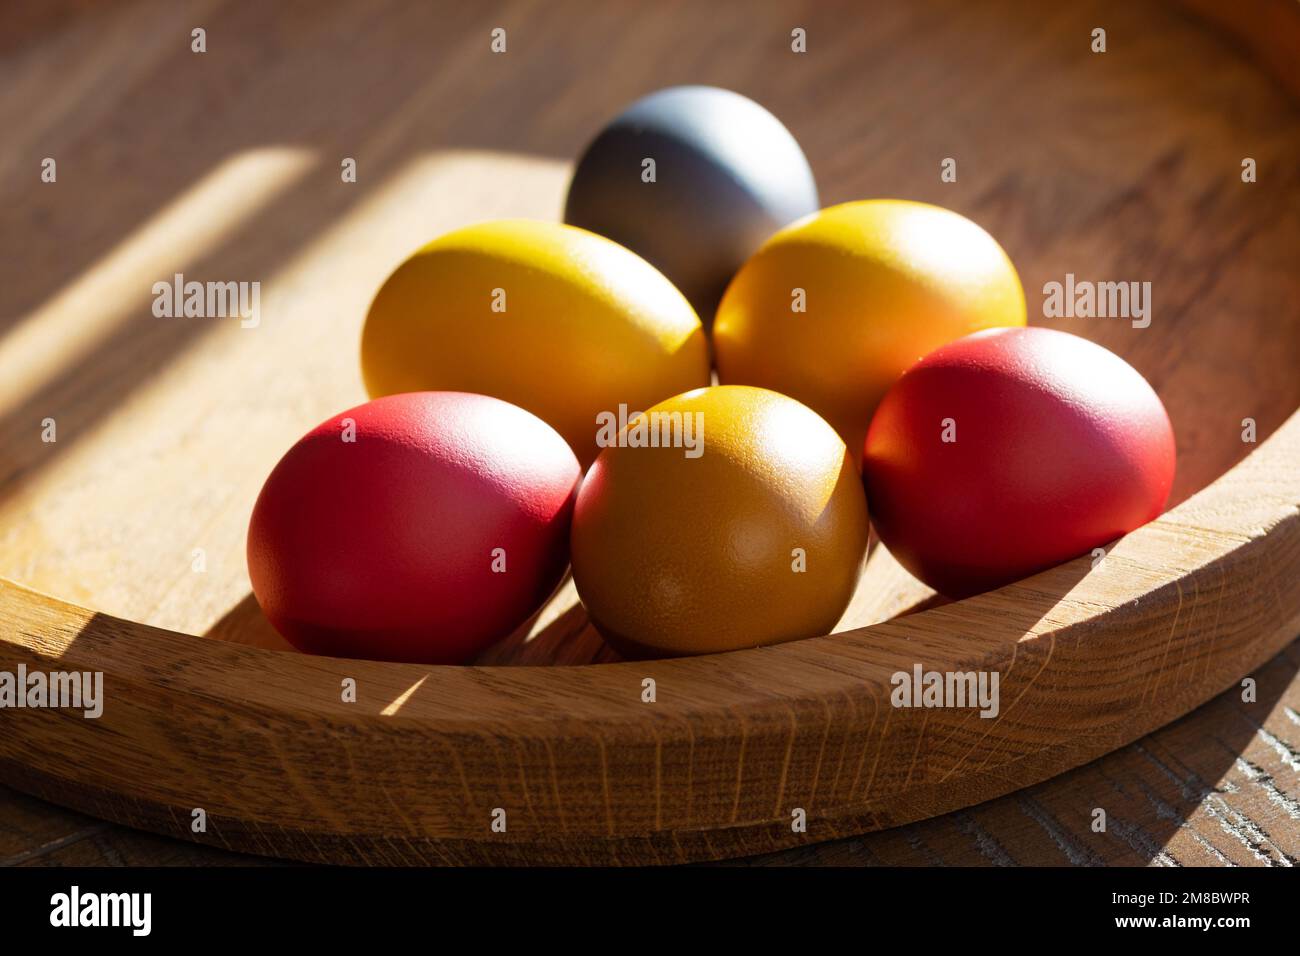 Six œufs de Pâques aux couleurs vives se trouvent sur un plateau en bois au soleil Banque D'Images